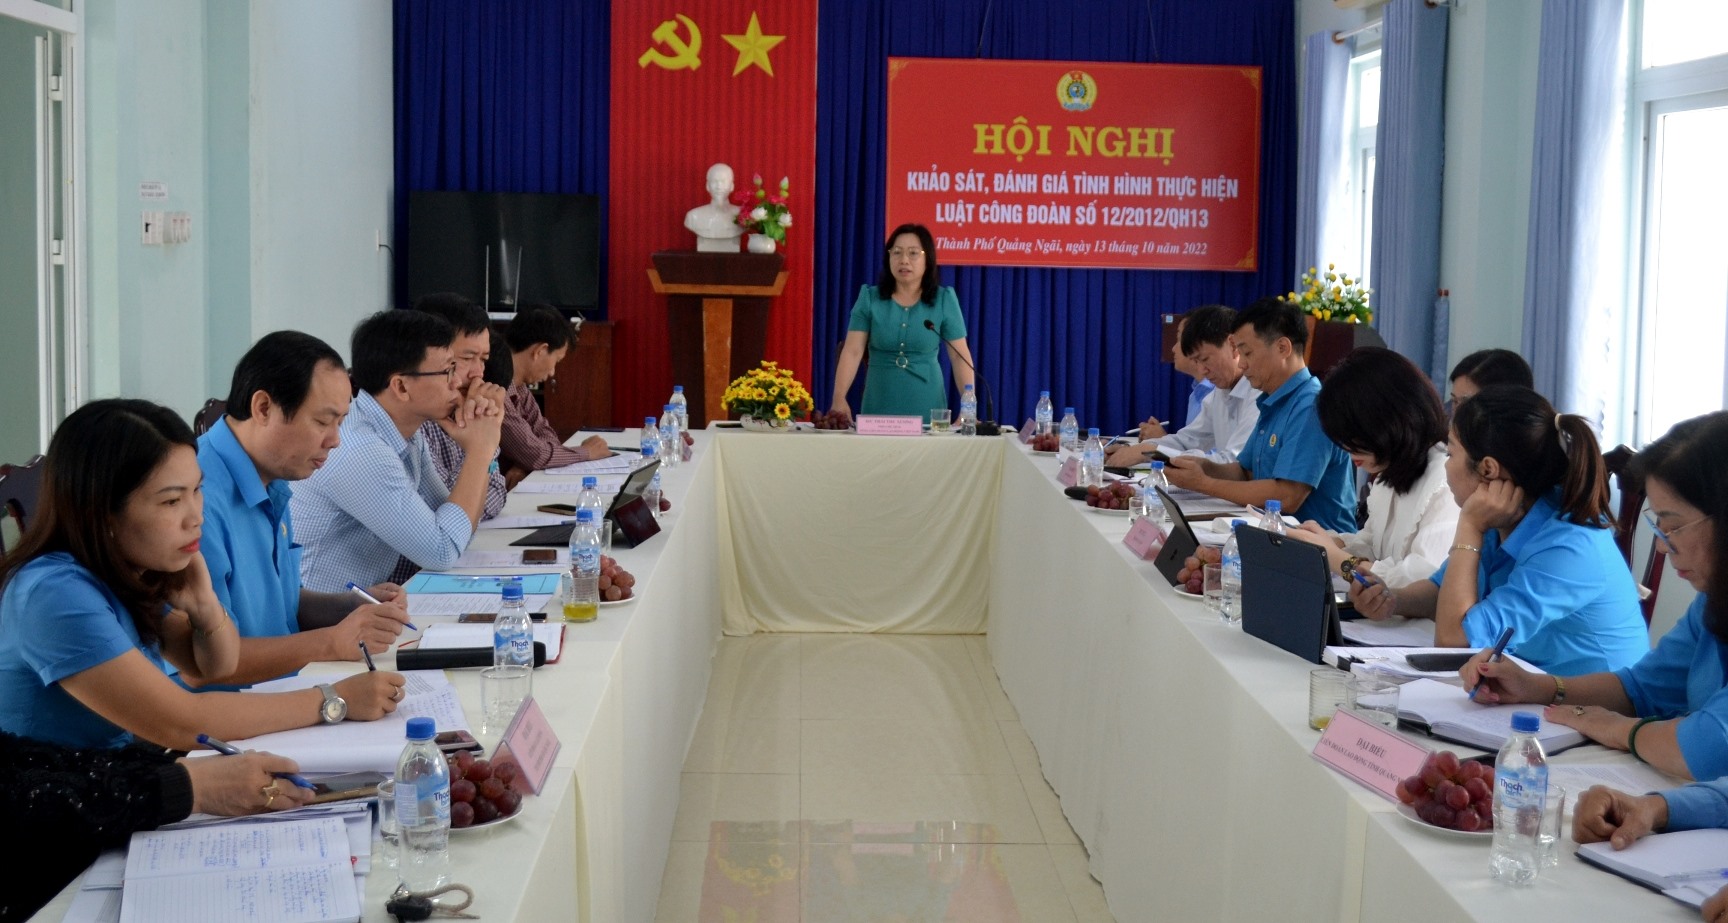 Tại Hội nghị, bà Thái Thu Xương ghi nhận những kết quả đạt được của các cấp công đoàn tỉnh Quảng Ngãi trong thực hiện Luật Công đoàn năm 2012.